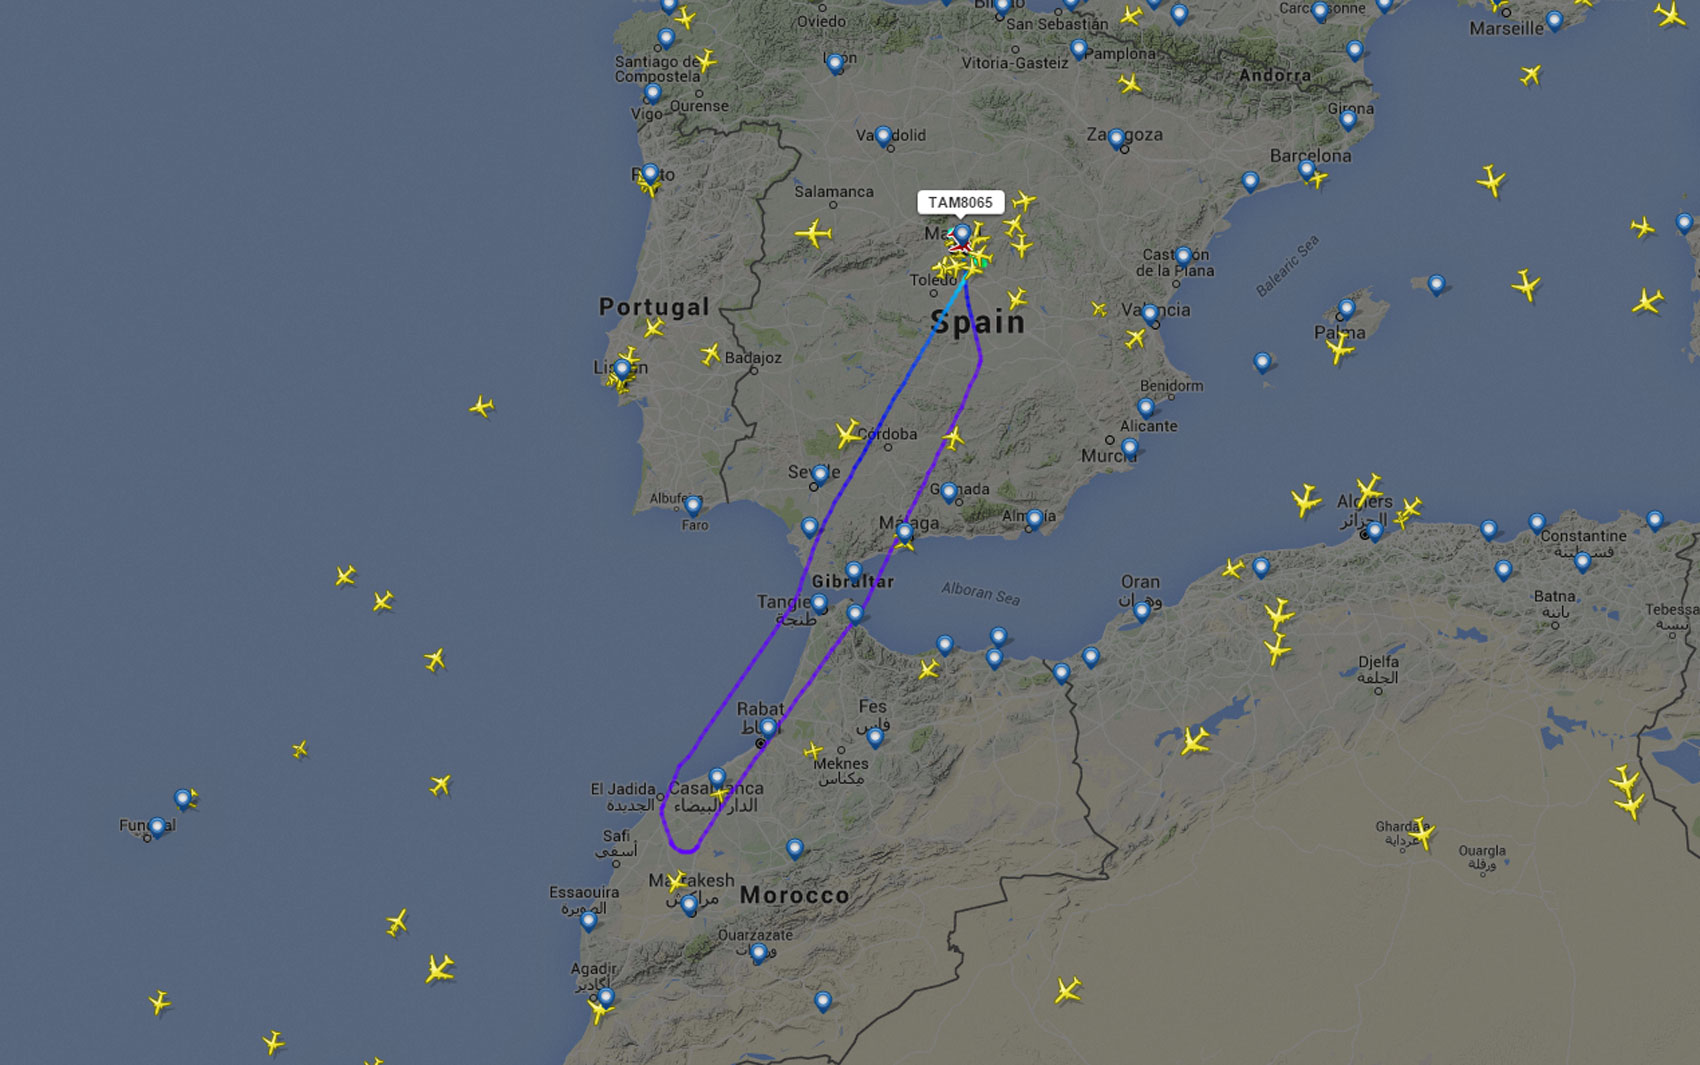 Imagem do site de monitoramento de voos Flight Radar mostra o trajeto do voo da Tam que retornou a Madri (Foto: Reprodução/Flight Radar)